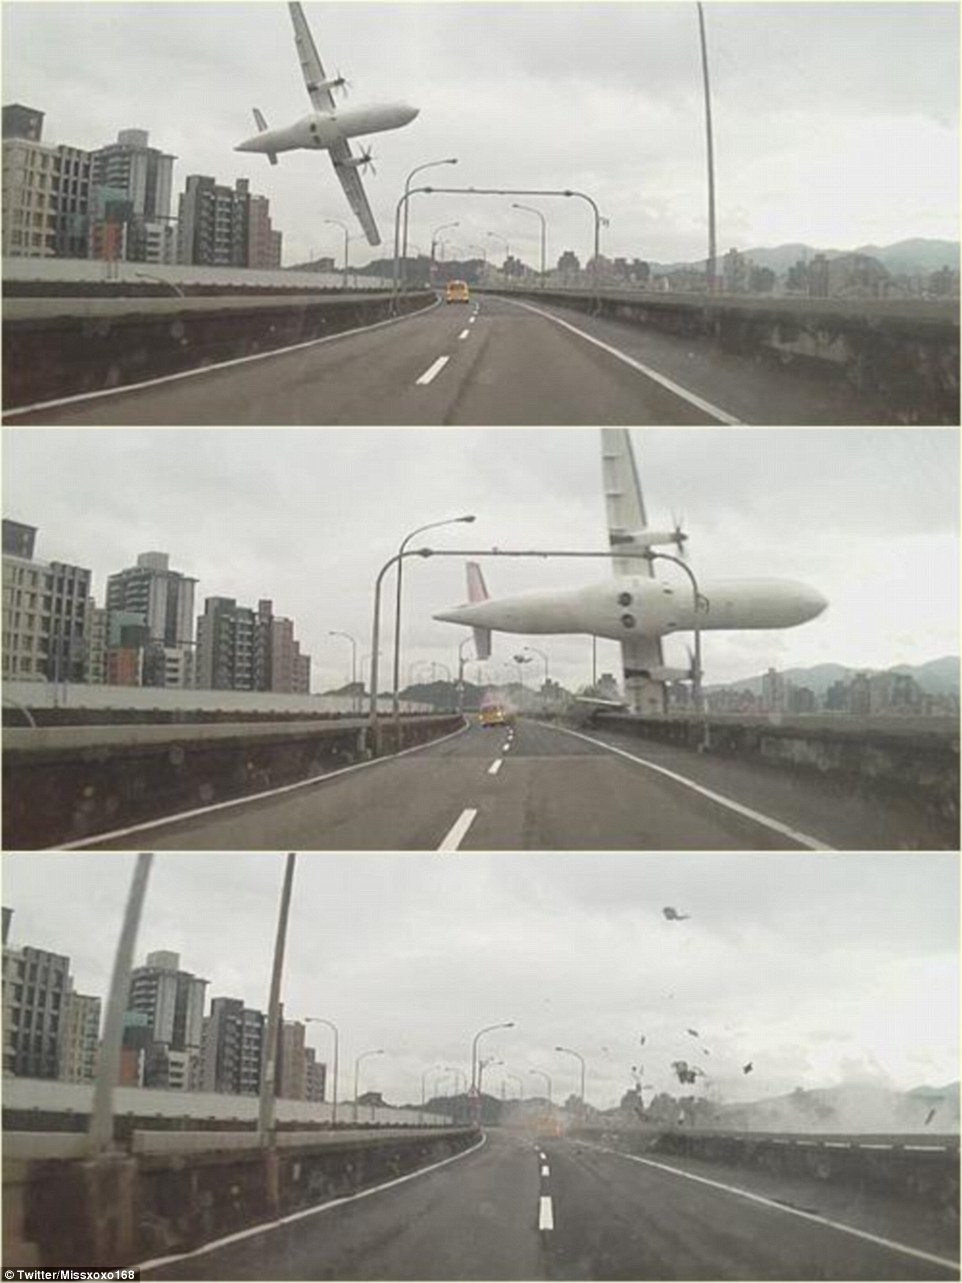 A TransAsia gépe egy hidat súrolva zuhant le - félelmetes videó a tragédiáról